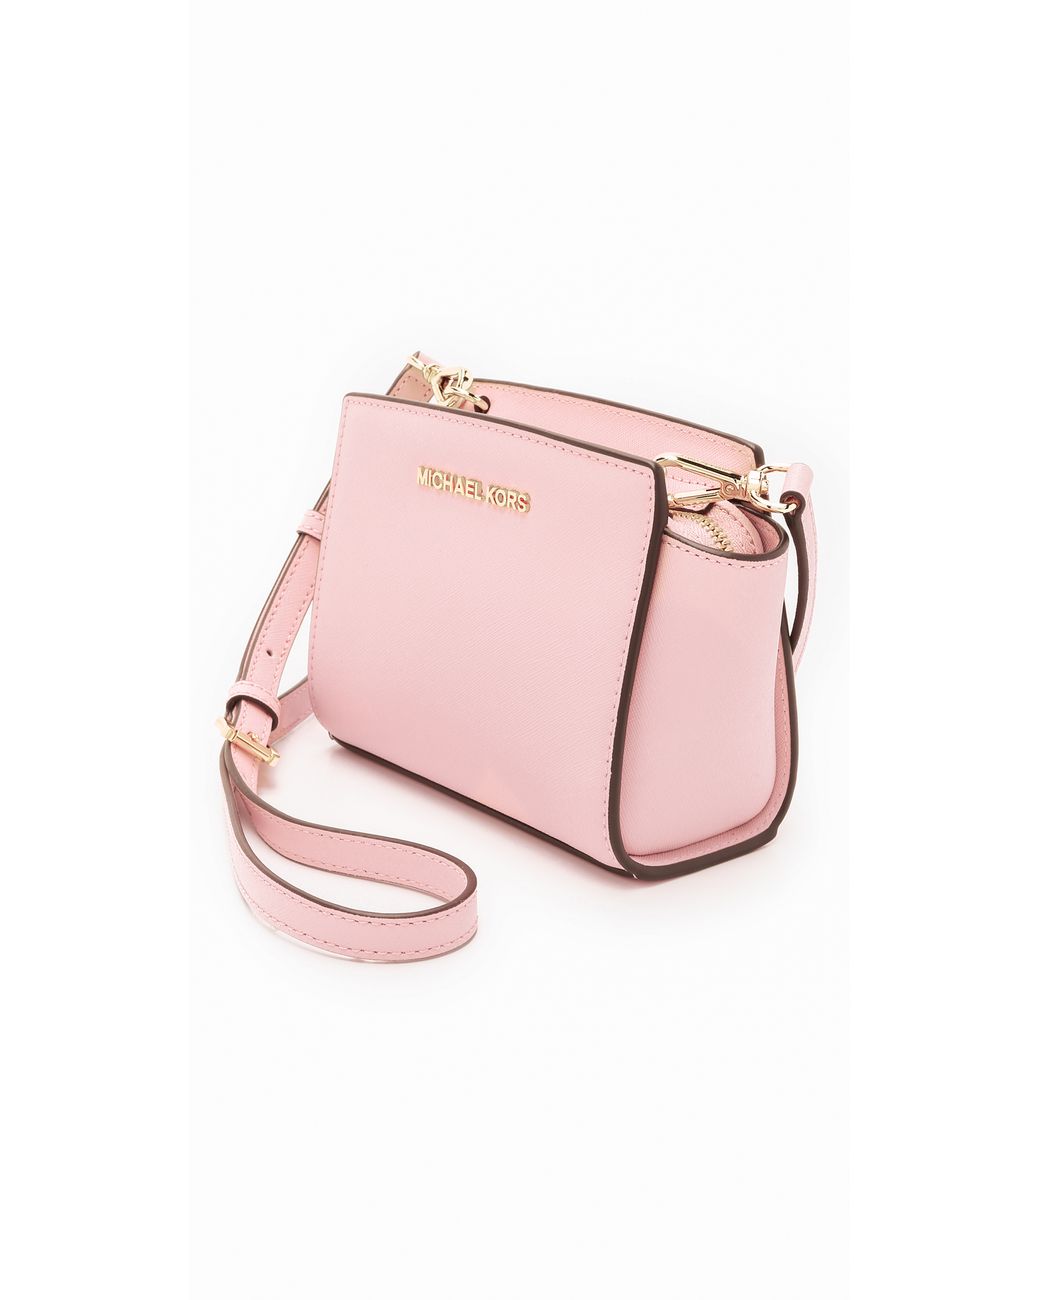 Michael Kors Sloan Large Shoulder Leather Ballet Pink Bag New Handbags  Amazoncom